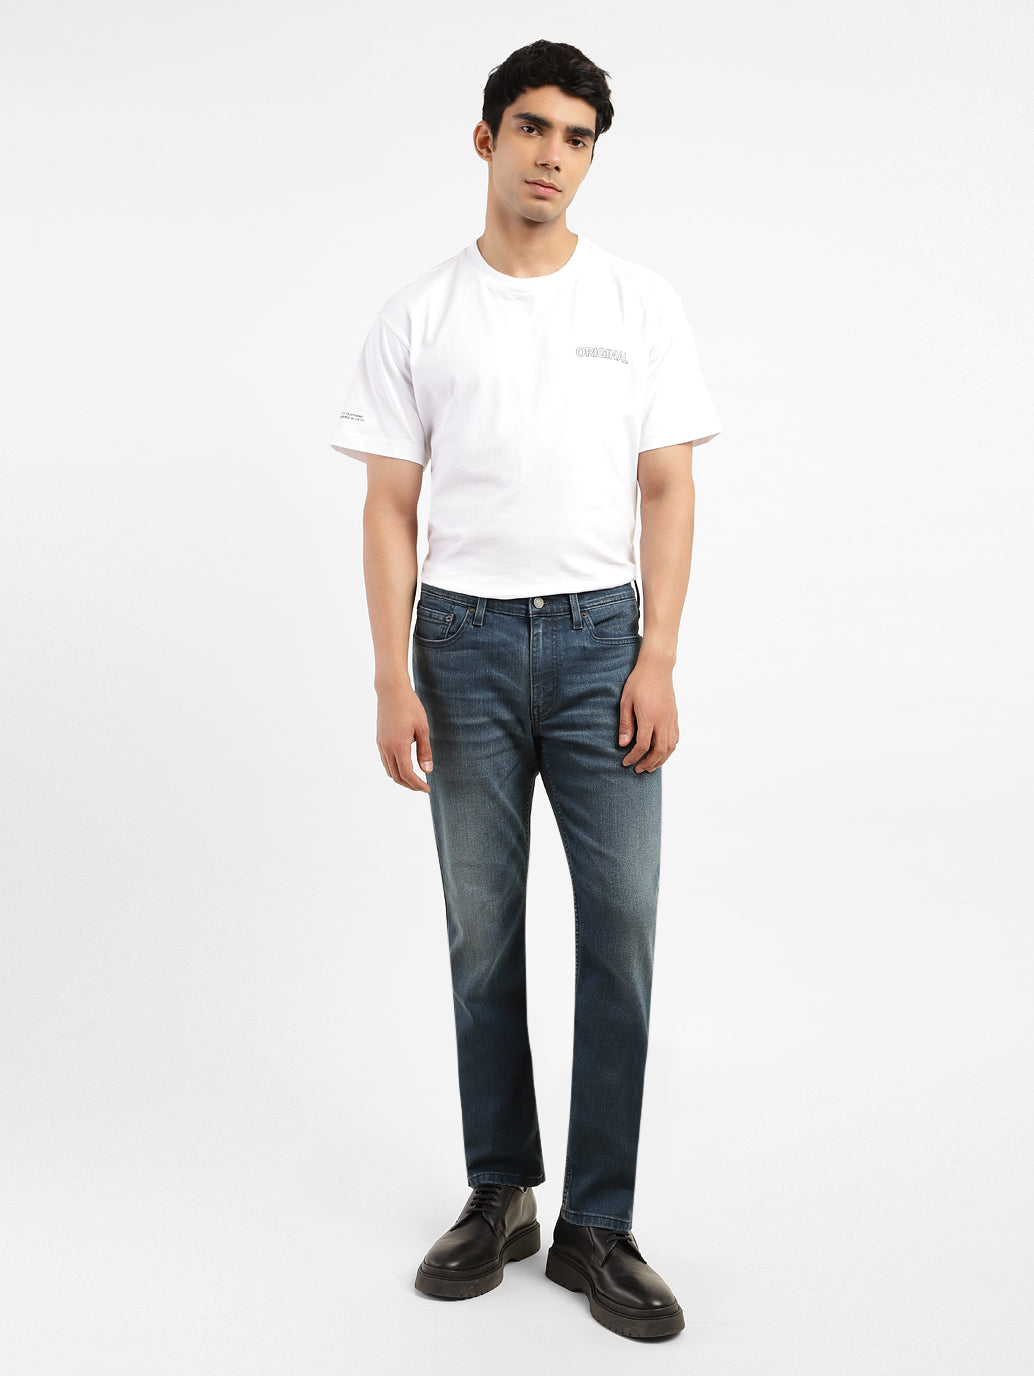 Men's 511 Mid Indigo Slim Fit Jeans